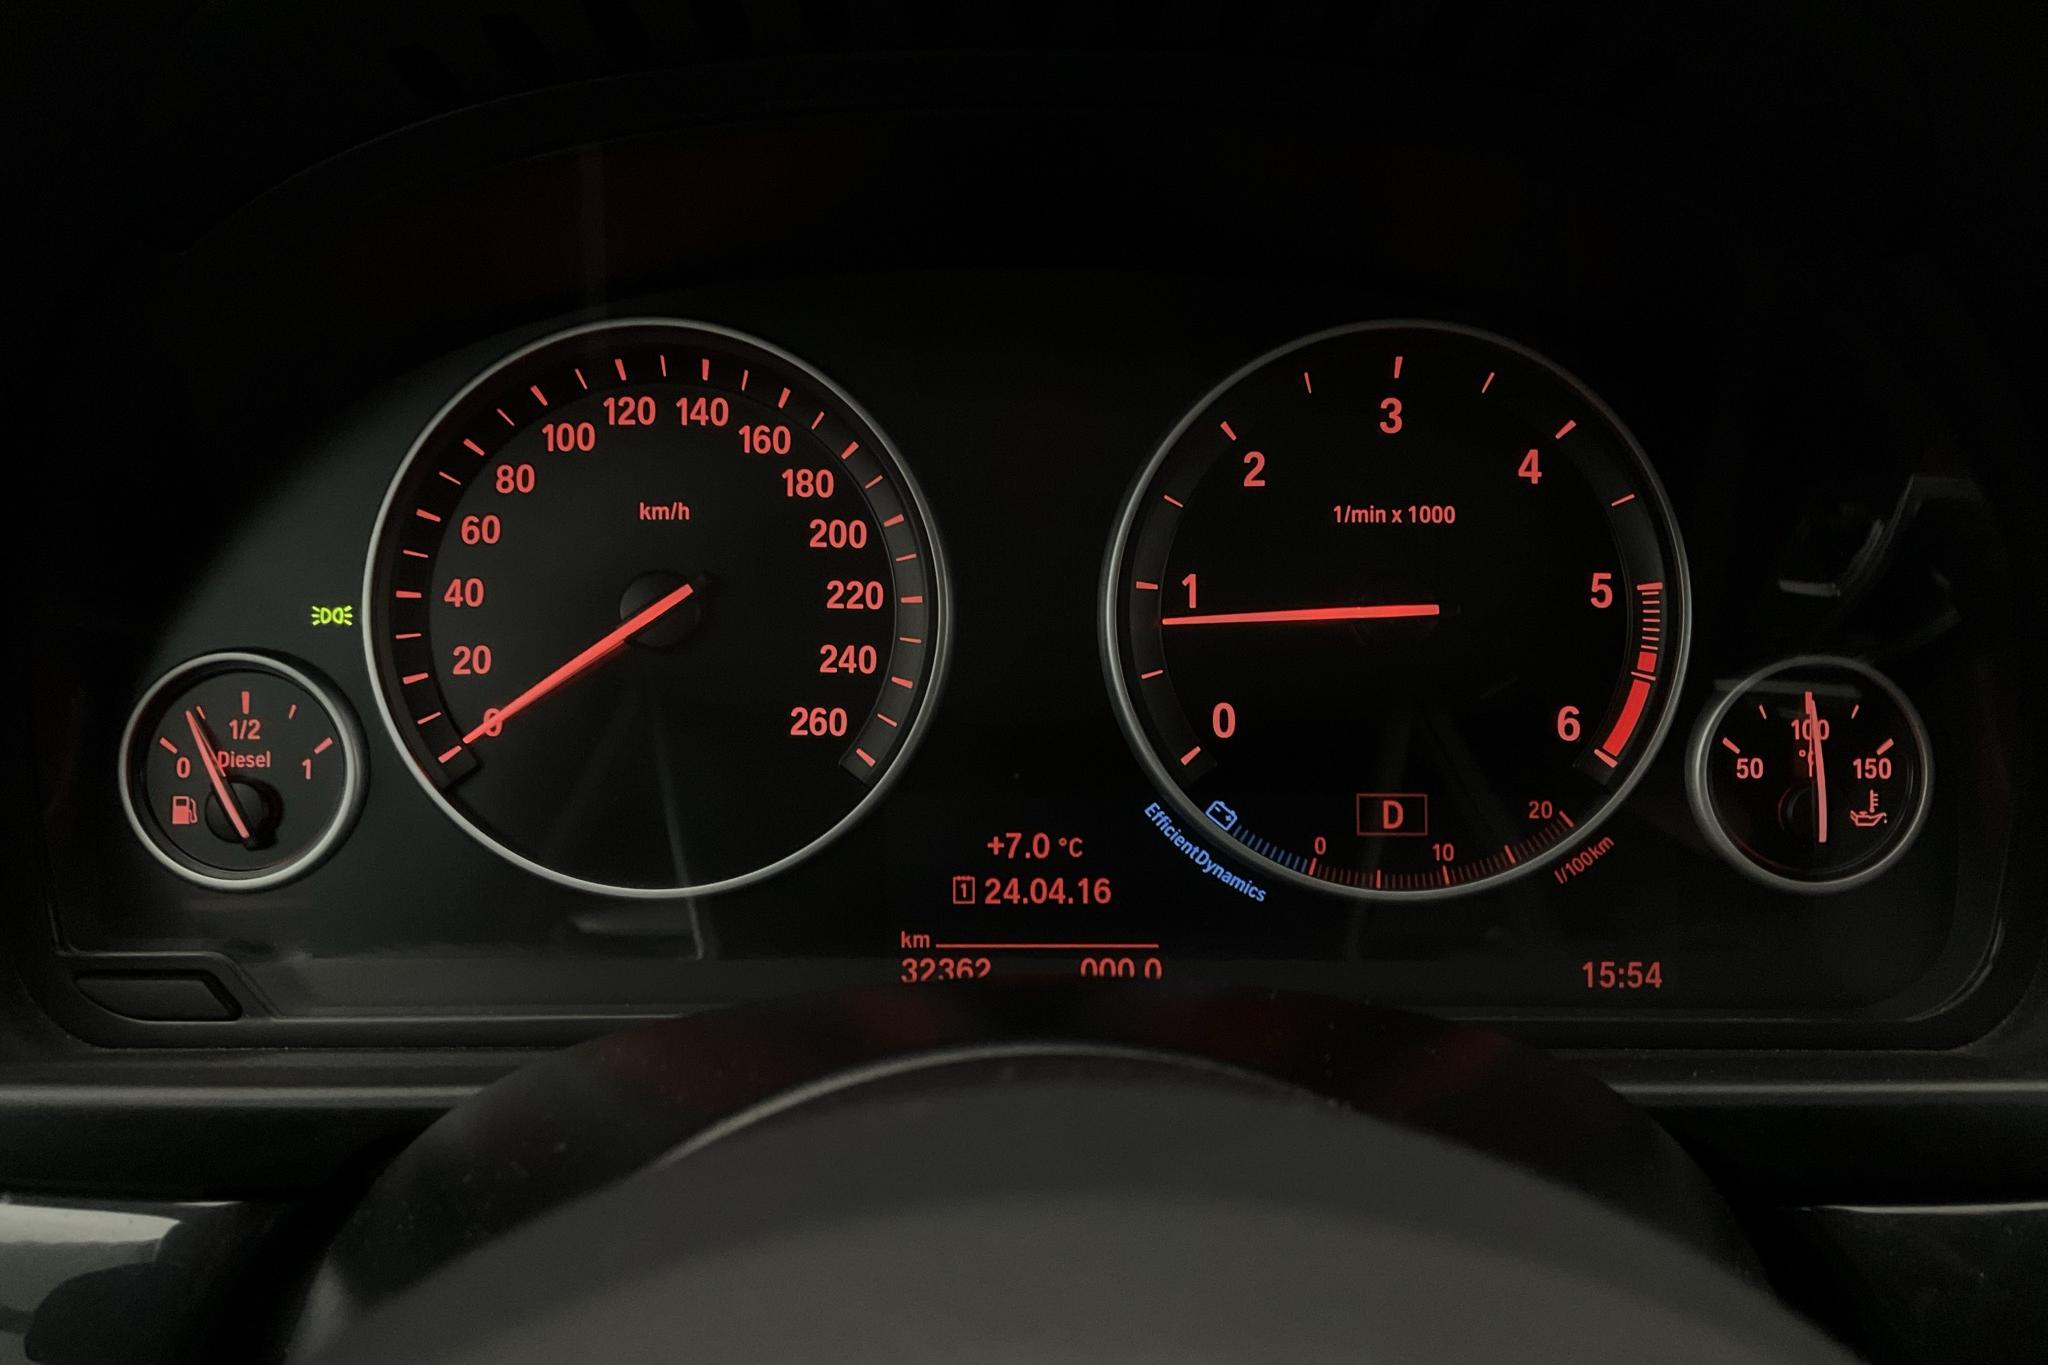 BMW 520d xDrive Touring, F11 (190hk) - 32 360 km - Automatic - black - 2016